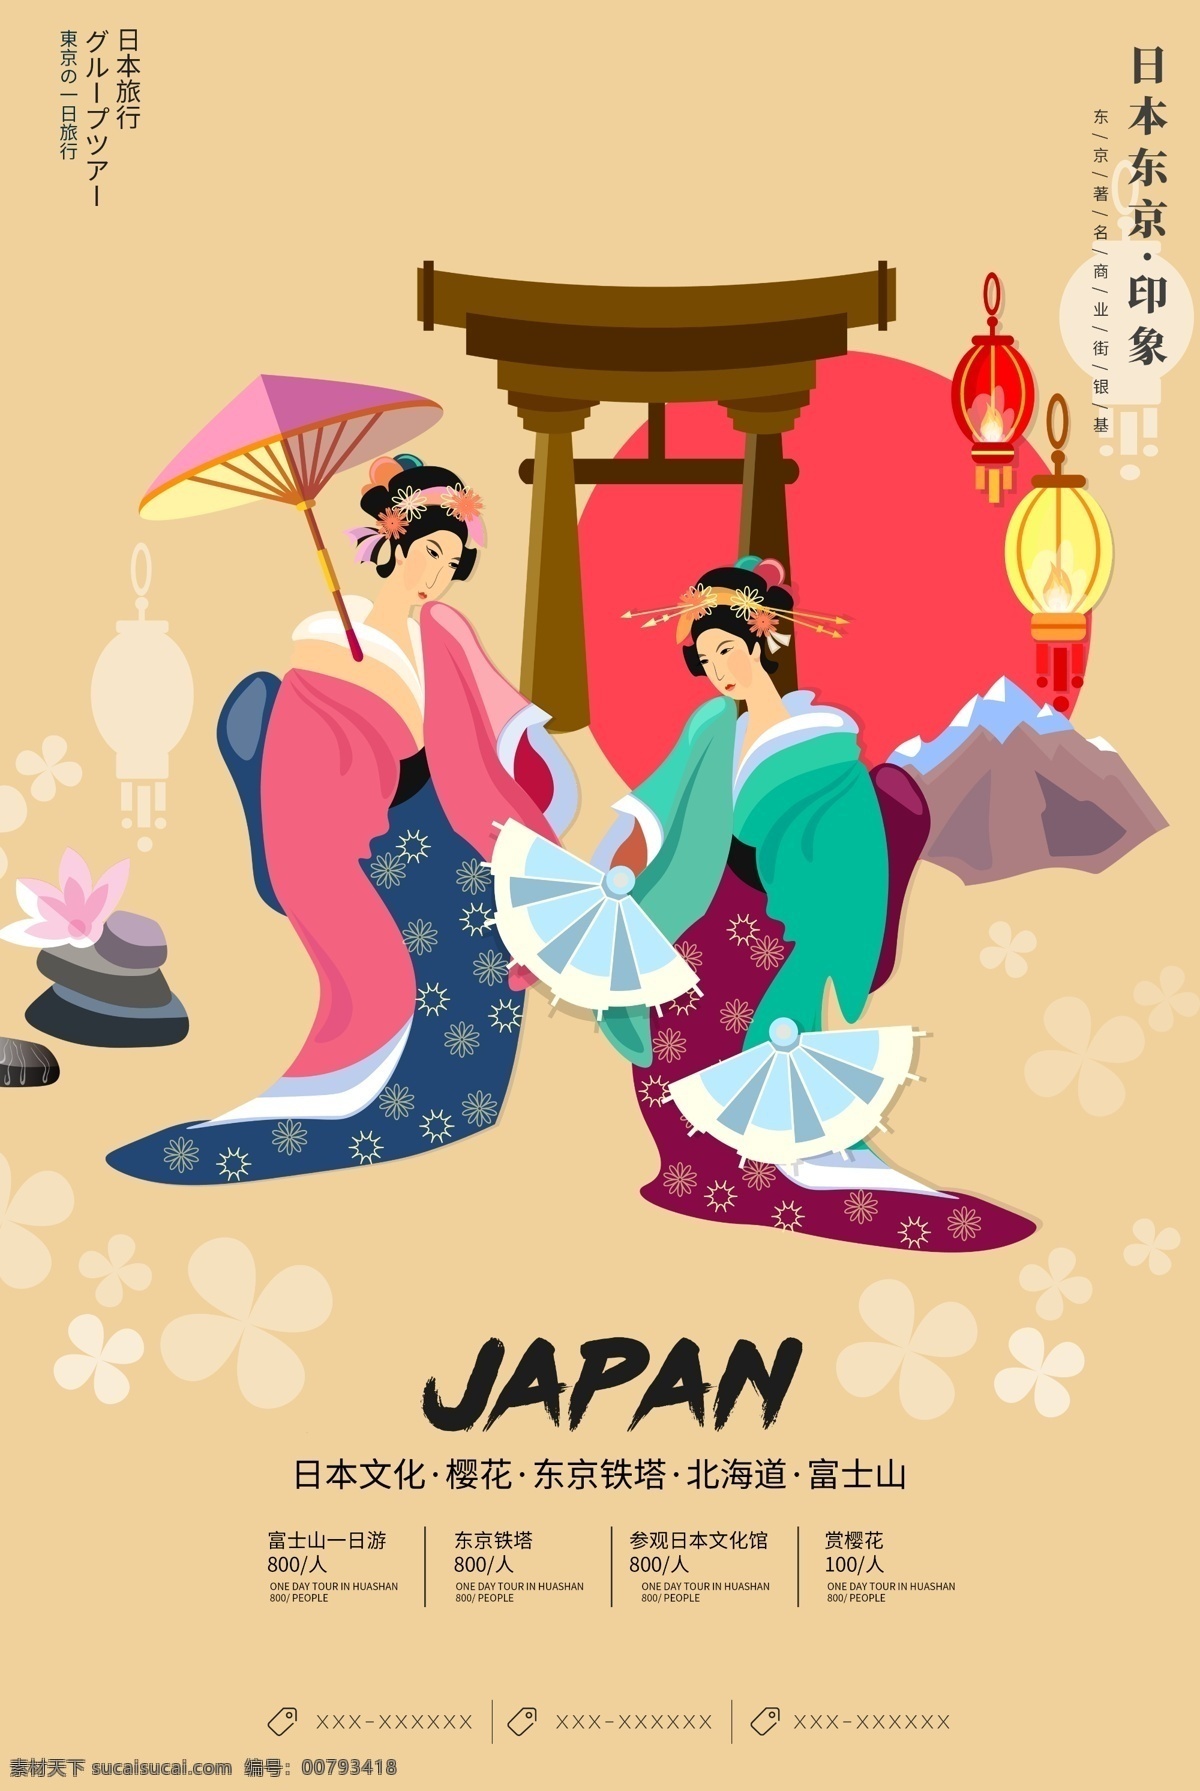 创意 插画 风格 日本旅游 户外 海报 日本风格 日本旅行 东京 大阪 日本印象 日本旅游海报 日本旅游风光 日本旅游景点 日本旅游攻略 日本旅游画册 日本旅游文化 免费模版